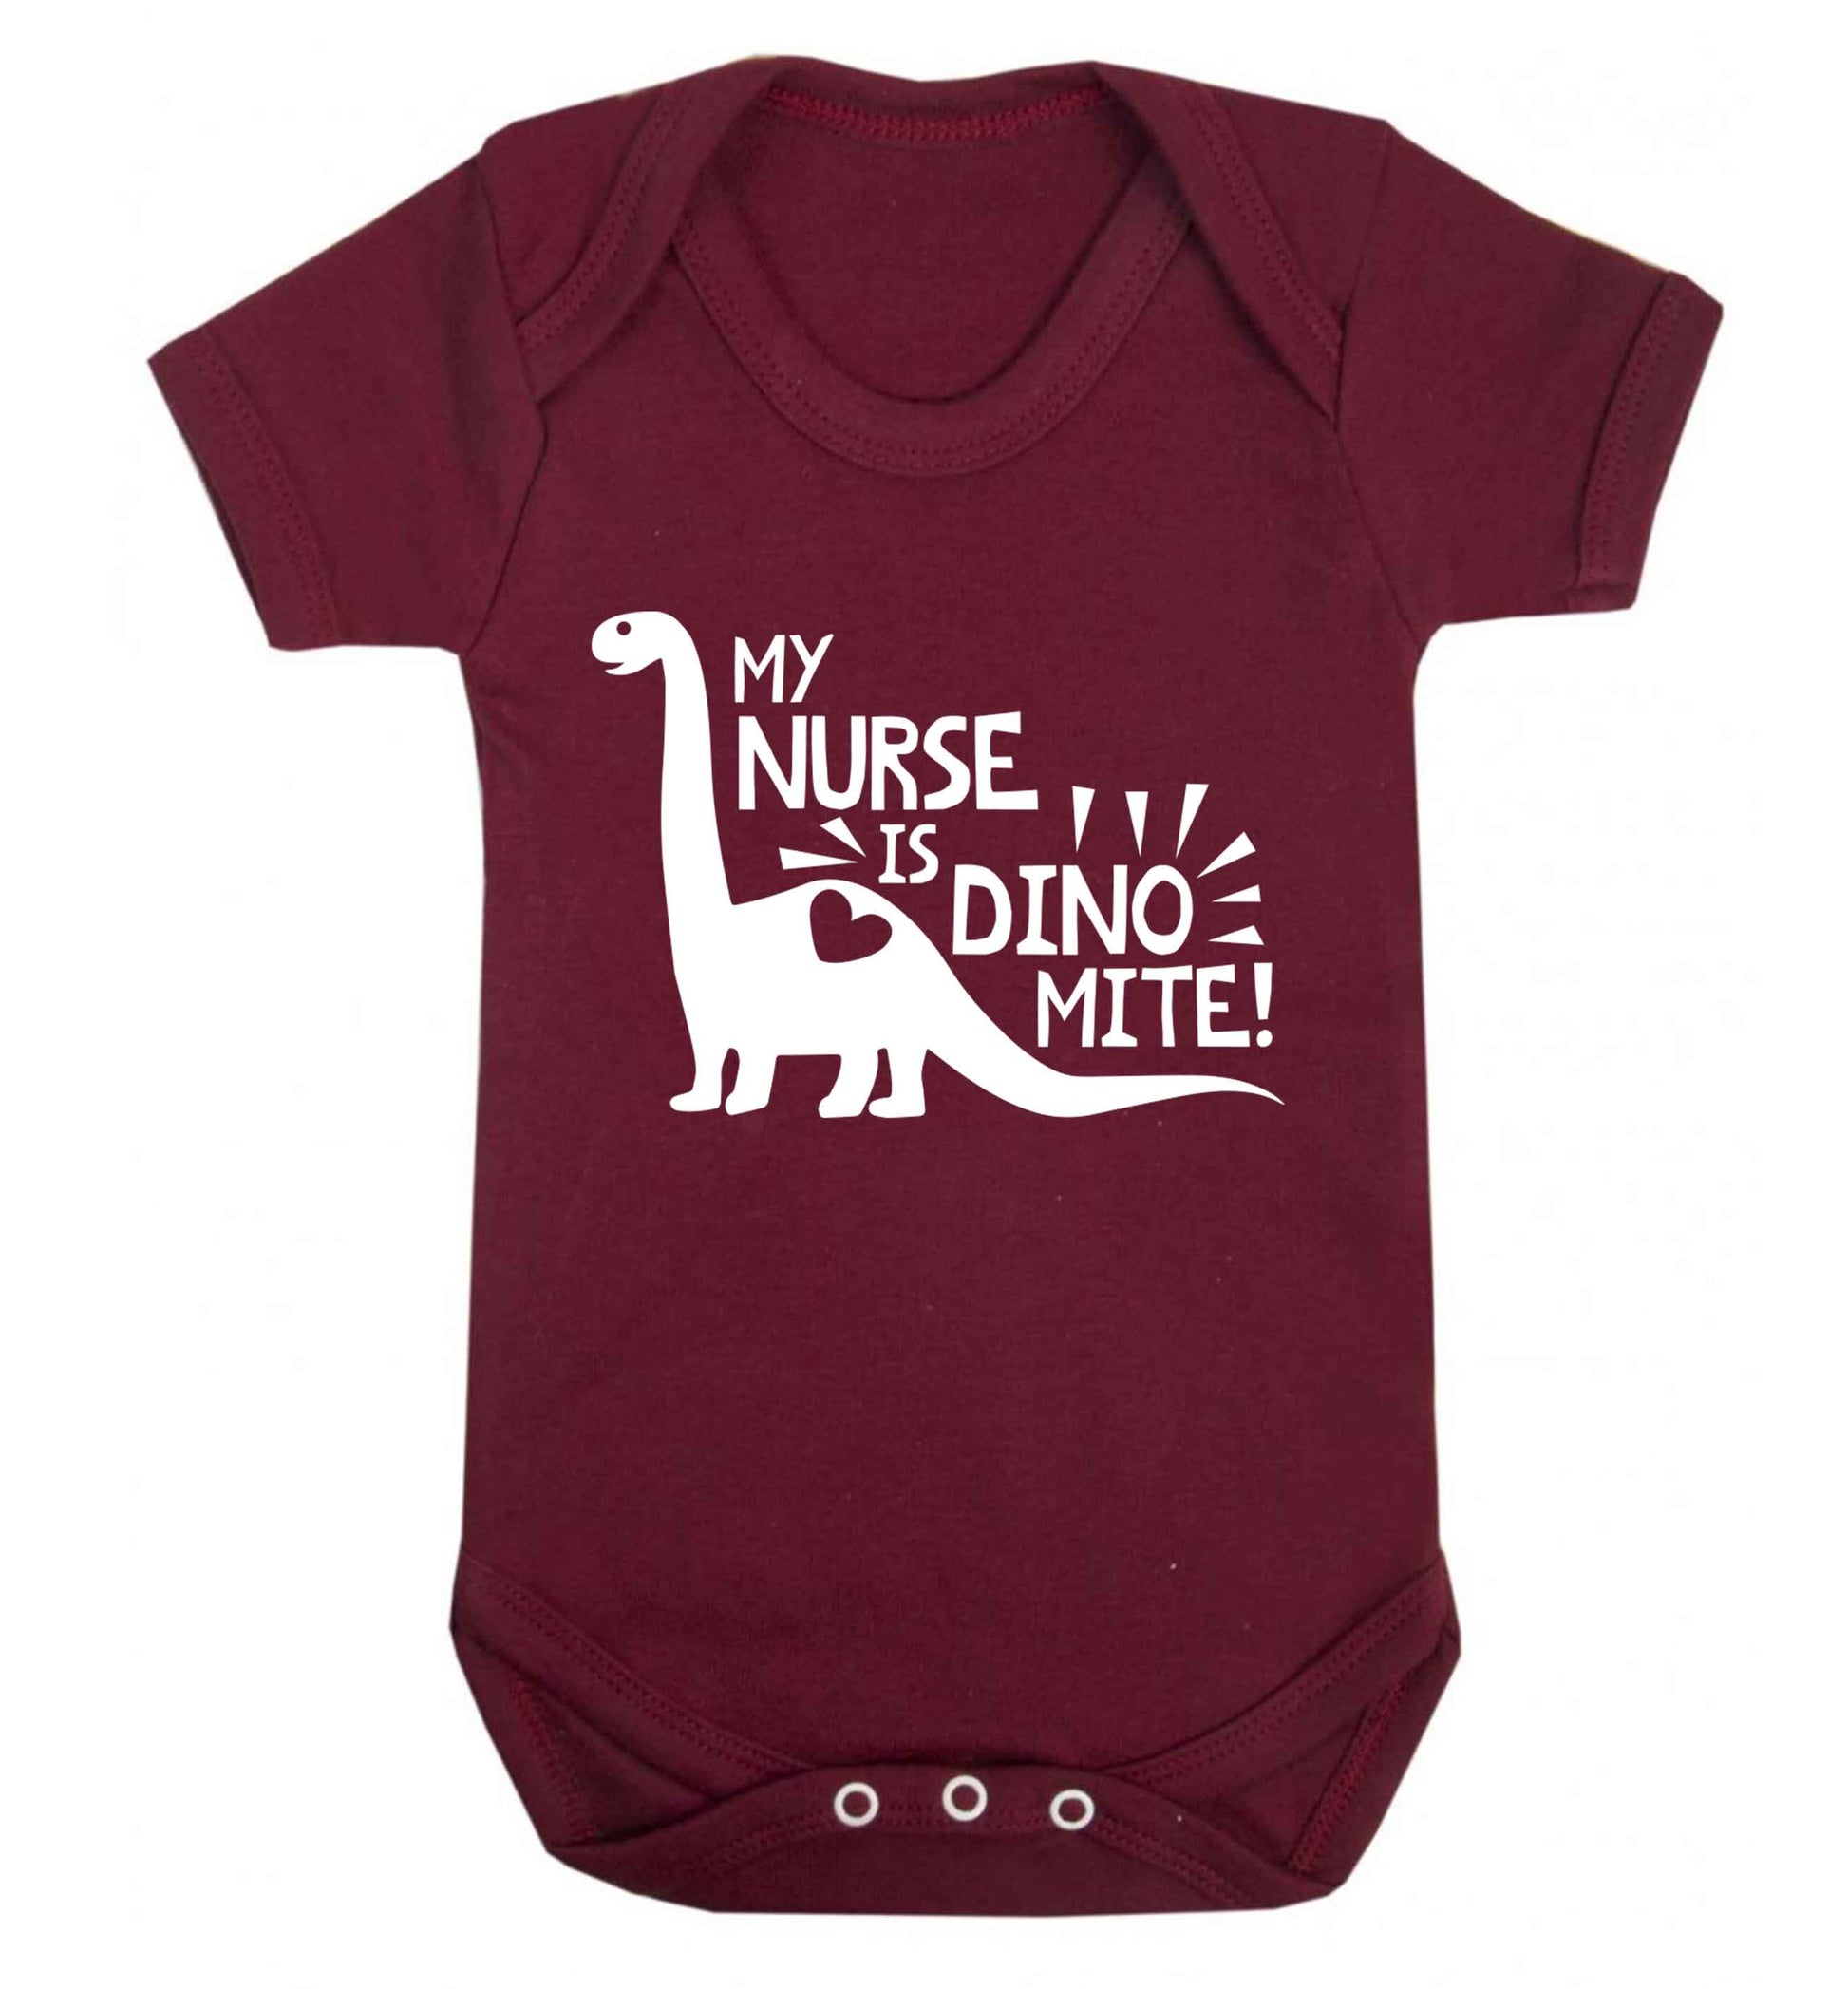 My nurse is dinomite! Baby Vest maroon 18-24 months